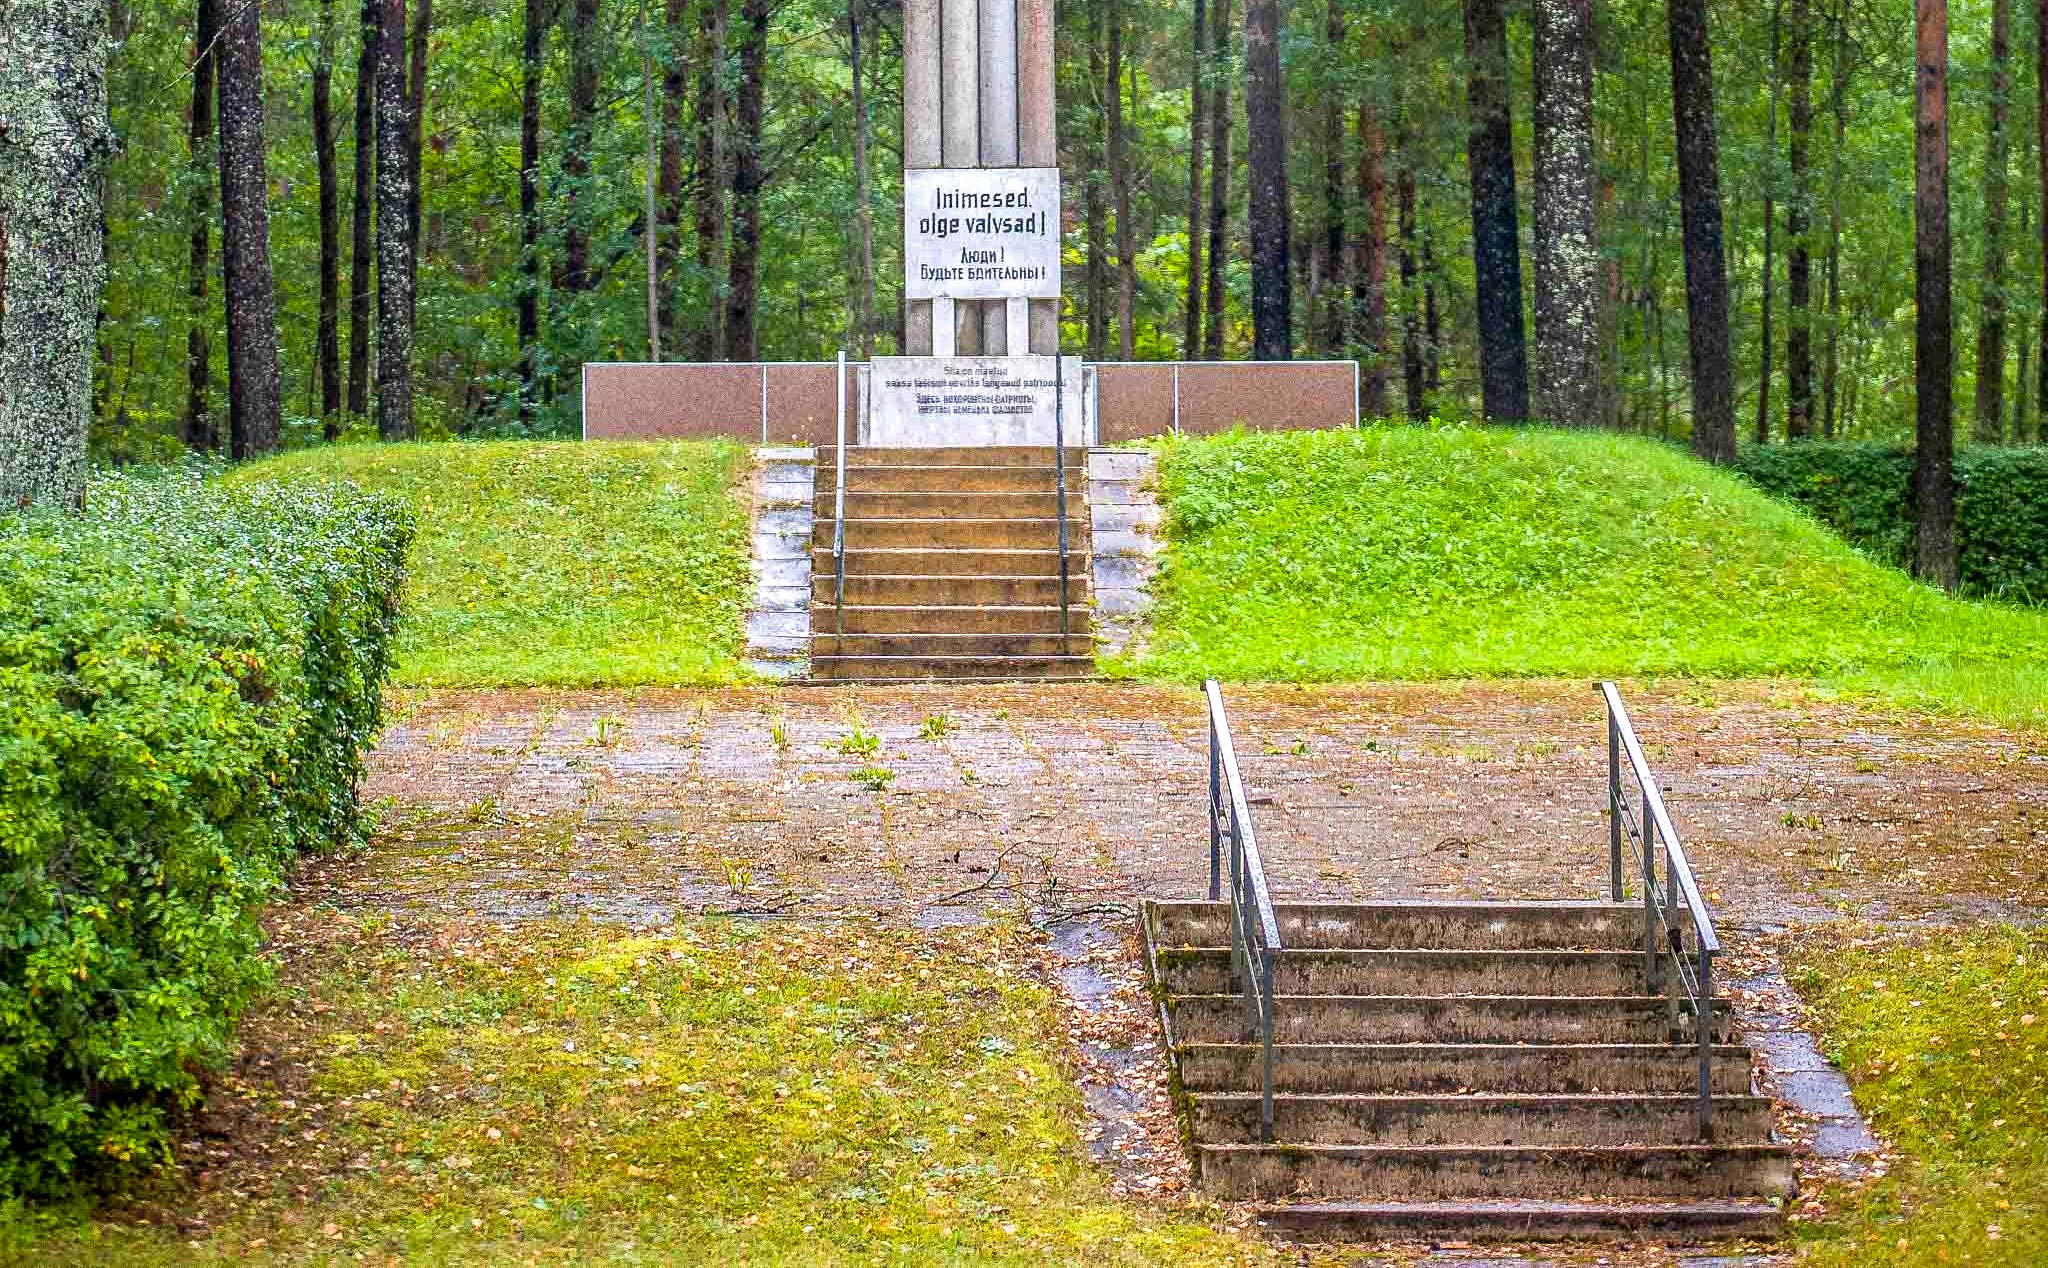 Võru linn on riigi ametkonnale esitanud avalduse kolme hauatähise eemaldamiseks linnaruumist. Foto: AIGAR NAGEL